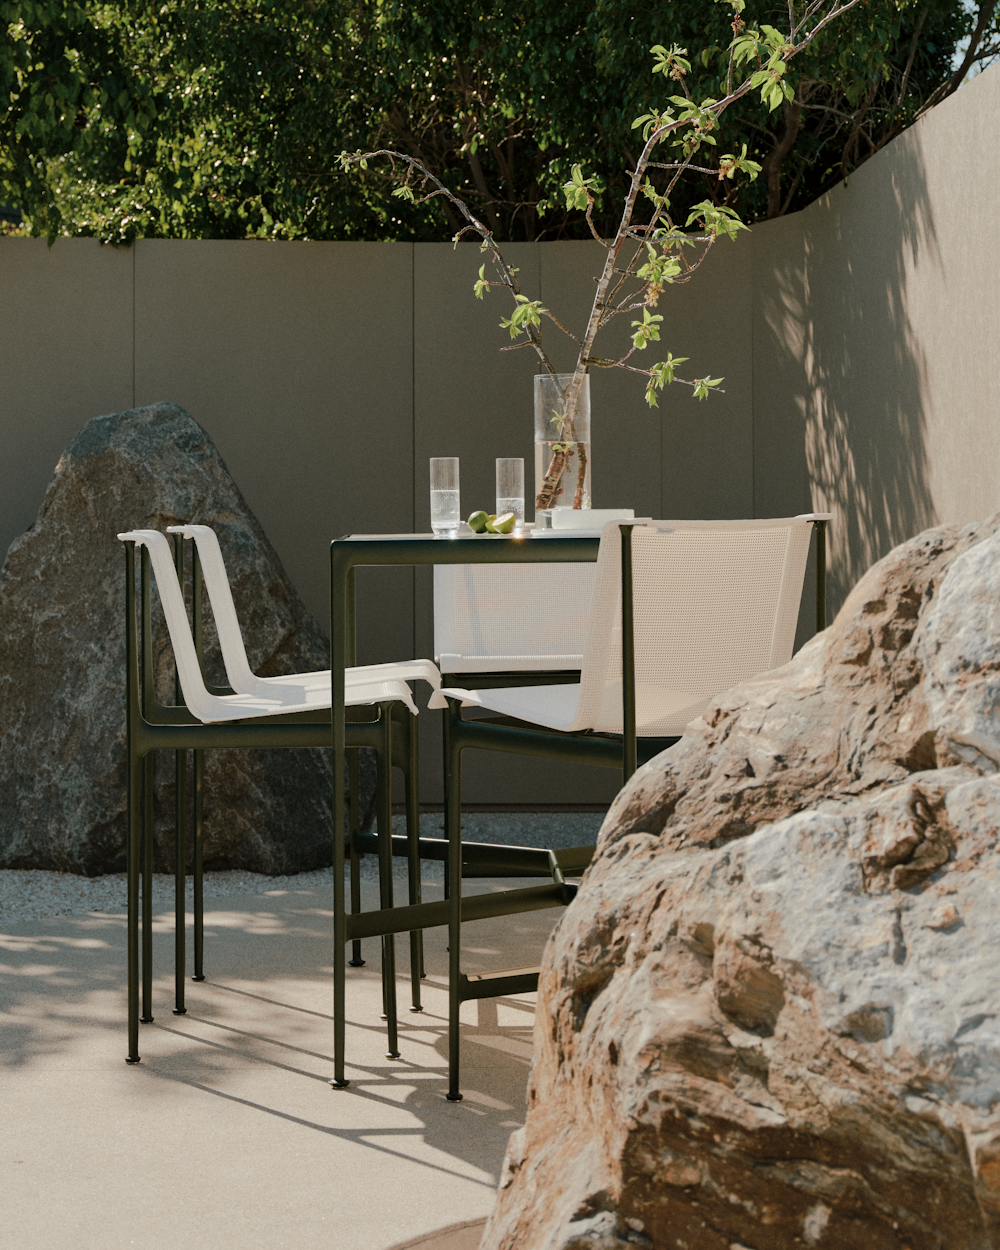 Iquo Armchairs, Saarinen Outdoor Dining Table